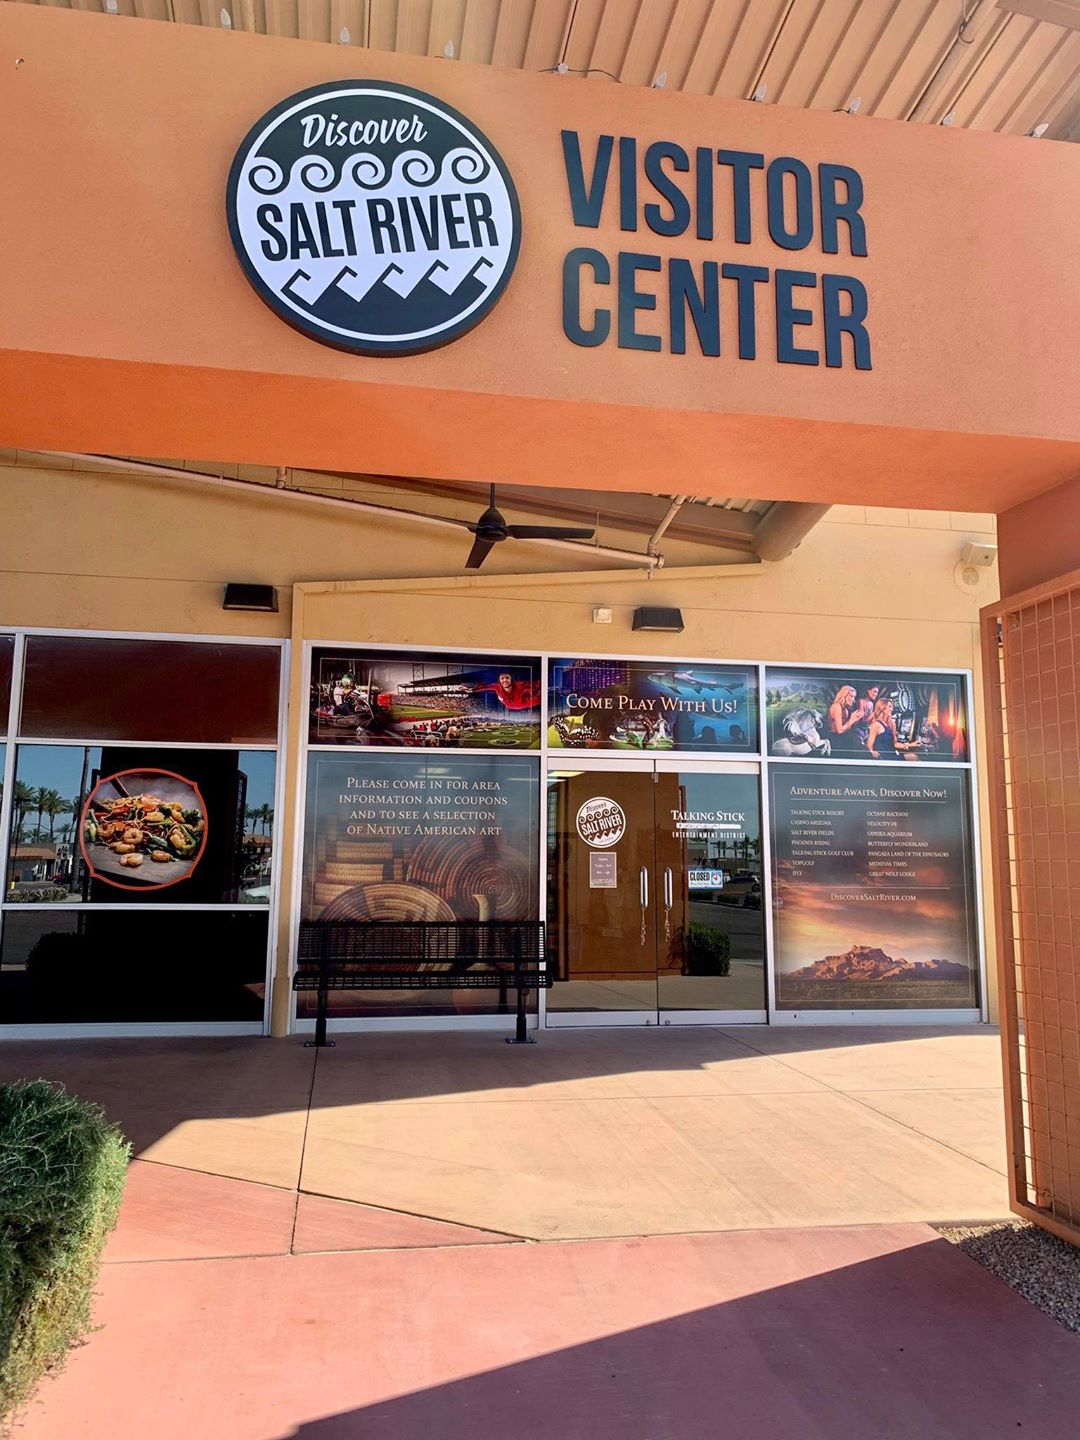 The Salt River Visitor Center